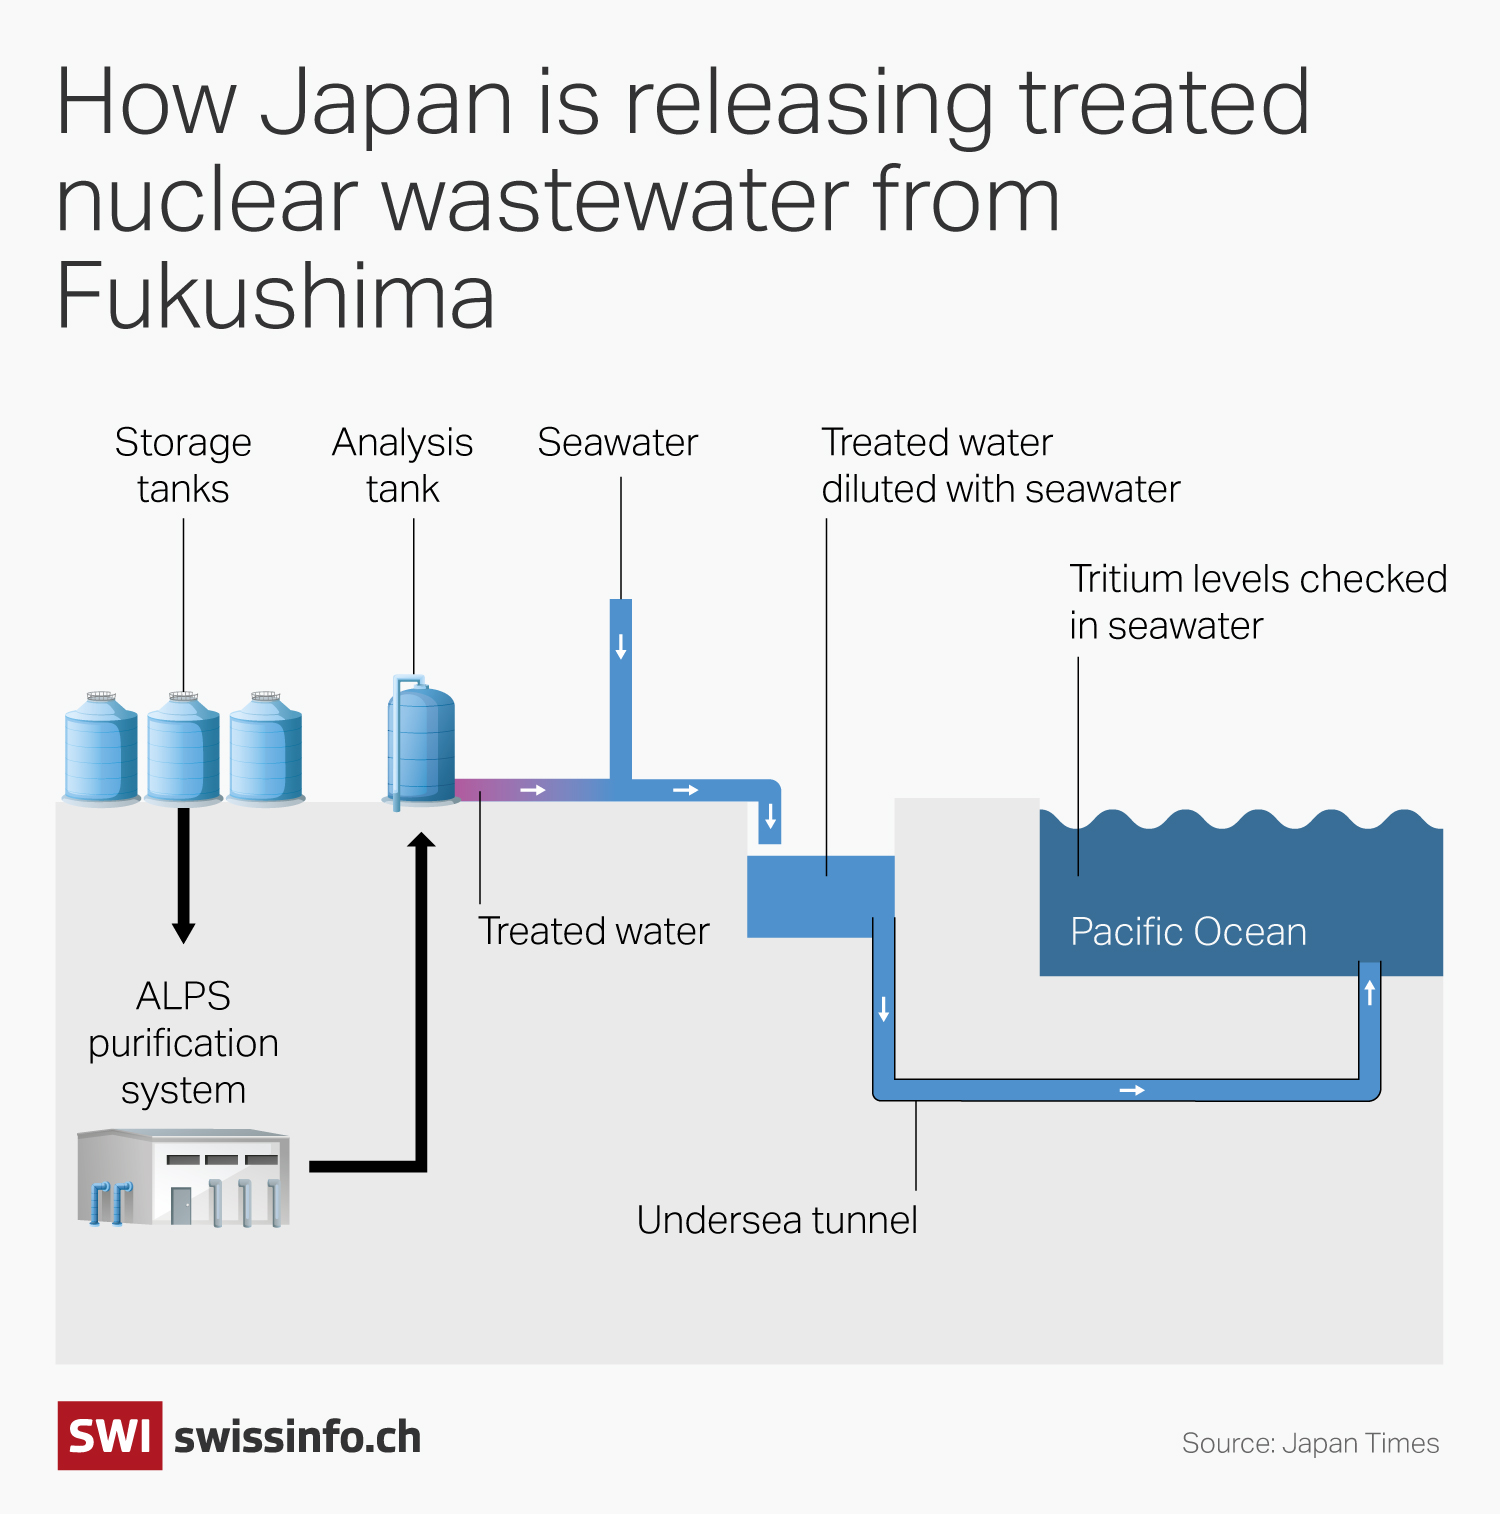 ALPS water purification at Fukushima.